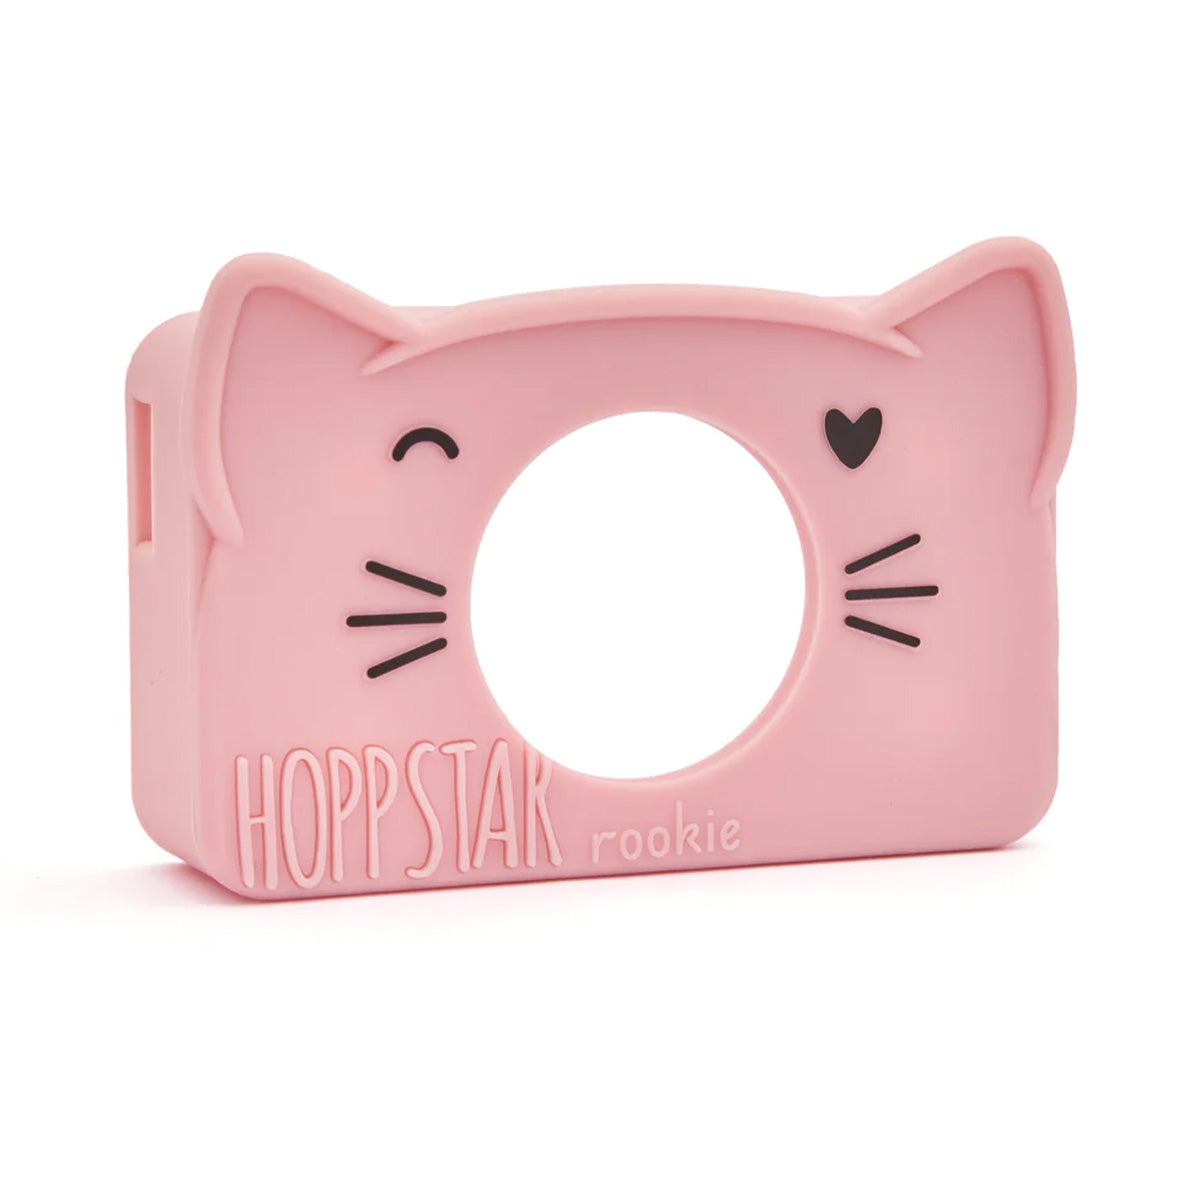 De Hoppstar siliconen case Rookie blush is een beschermhoes voor de Hoppstar Rookie camera. Deze camera wordt geleverd met 1 hoesje, maar deze kun je verwisselen voor een andere variant. VanZus.